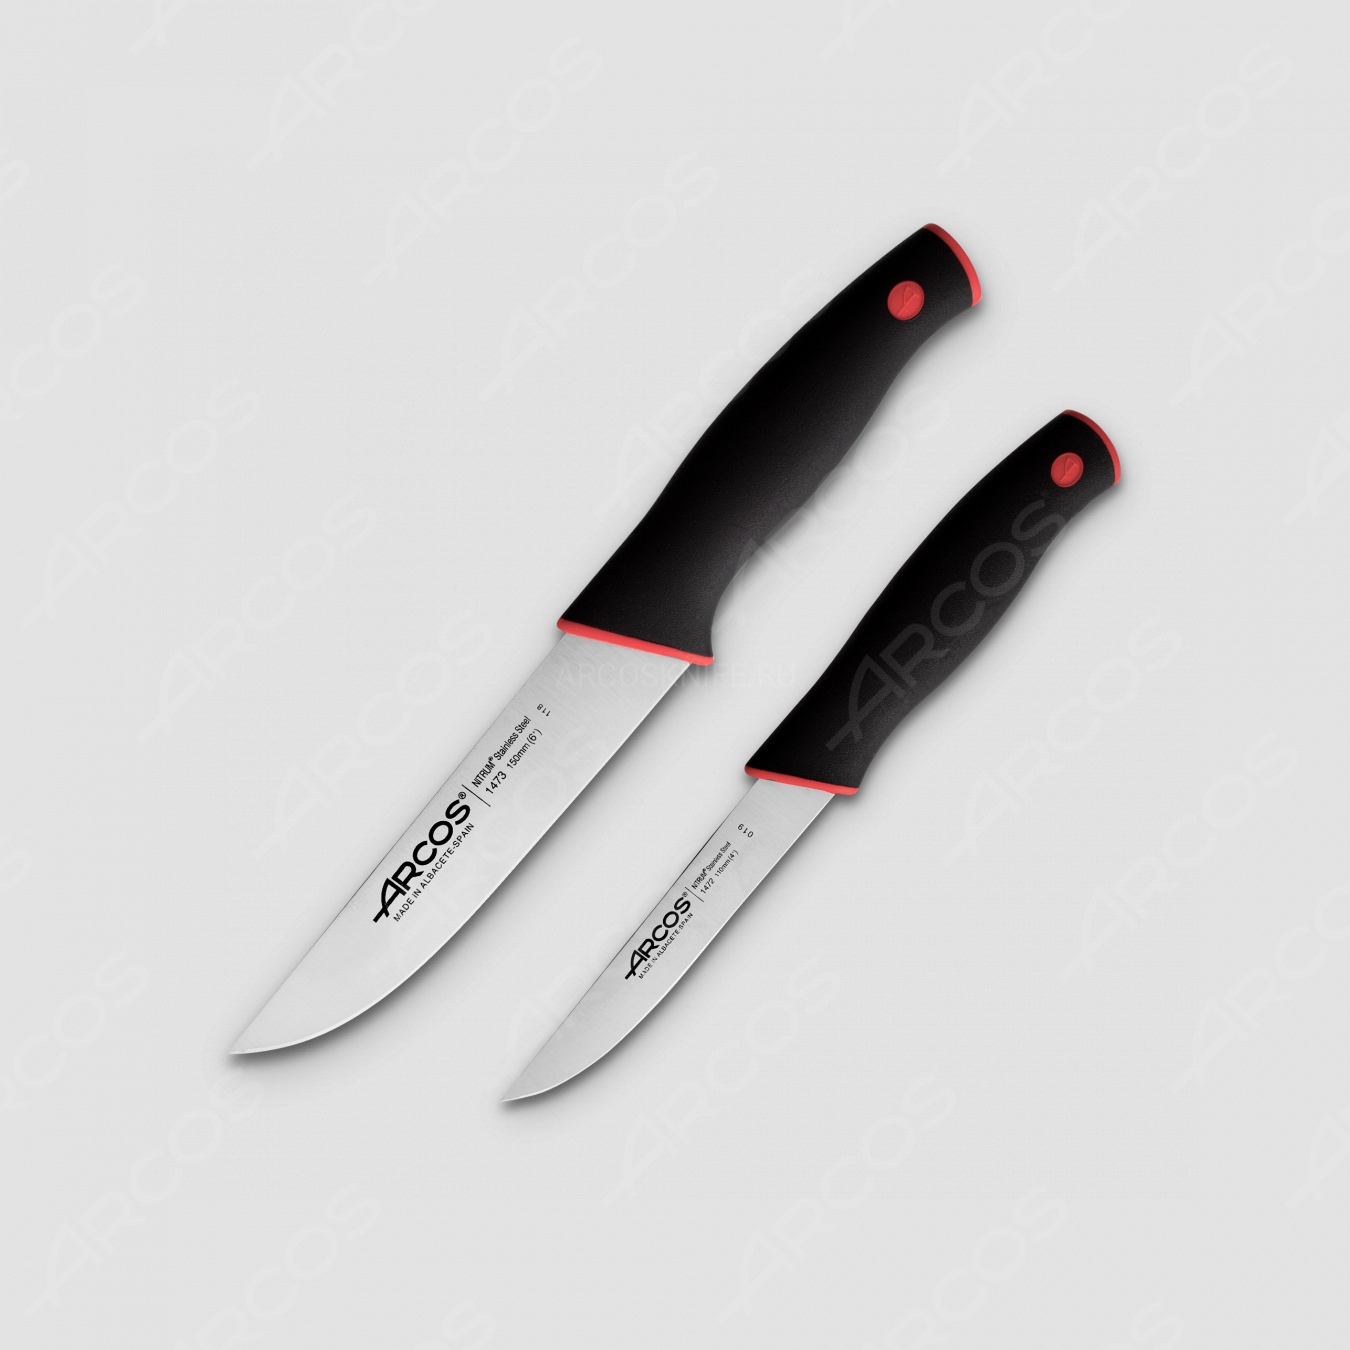 Набор кухонных ножей, 2 шт., серия Duo, ARCOS, Испания